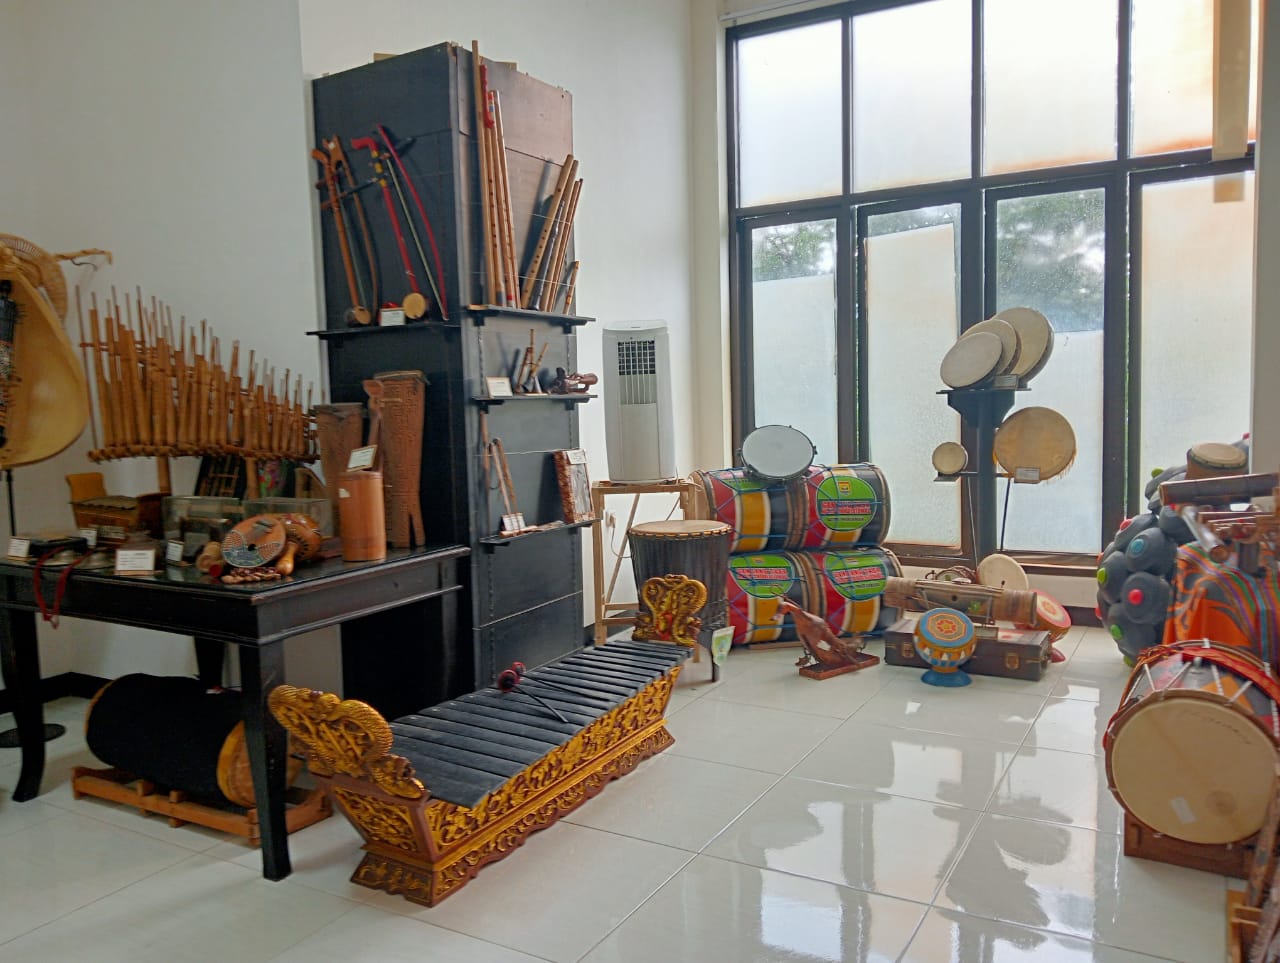 Ruangan alat musik tradisional di Museum Musik Indonesia. Foto/Fitrothul M.